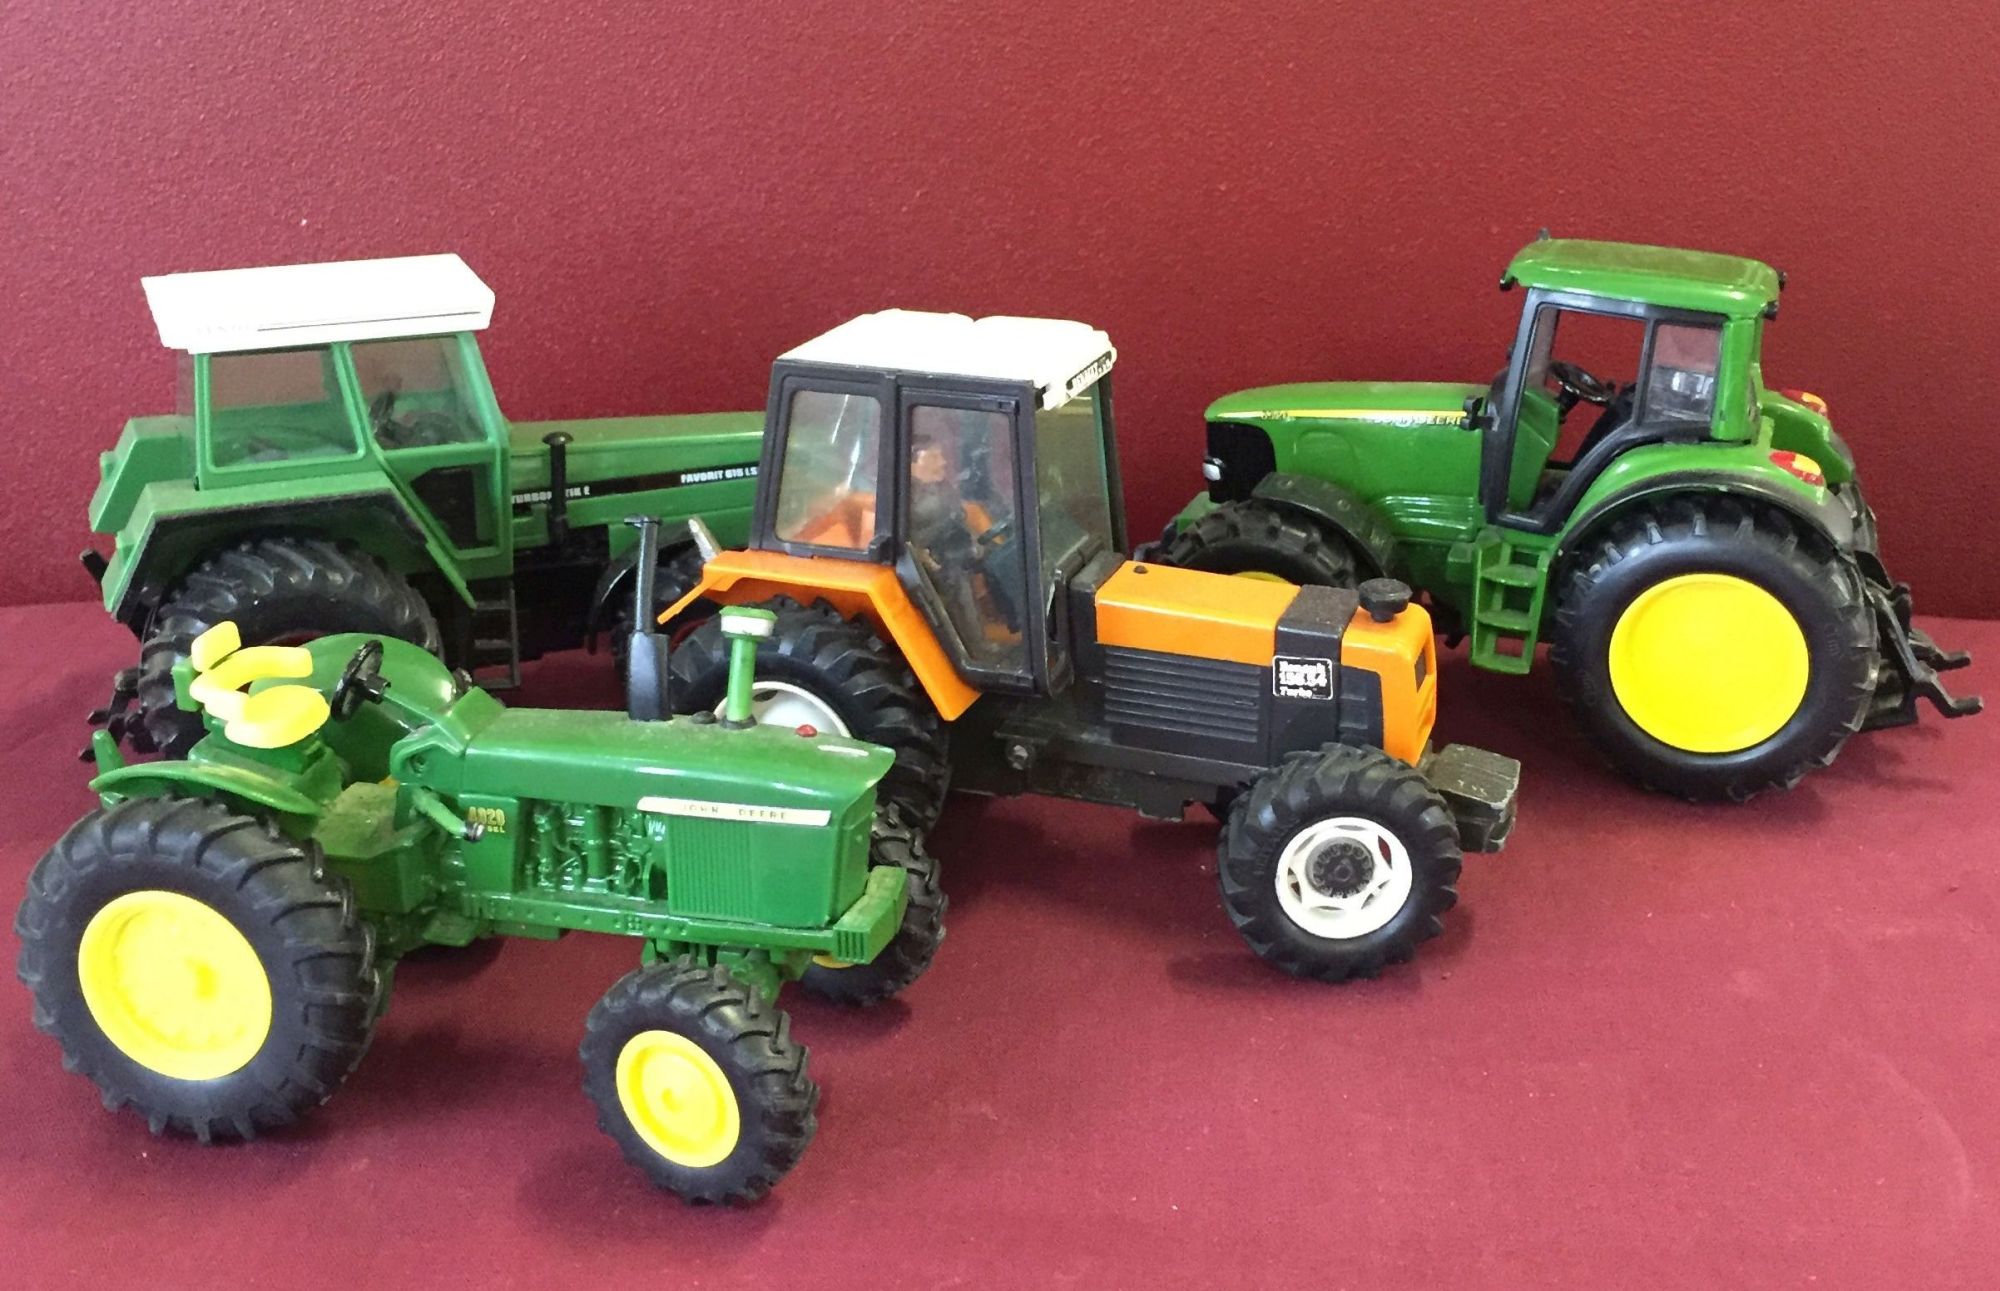 4 toy model tractors to include John Deere